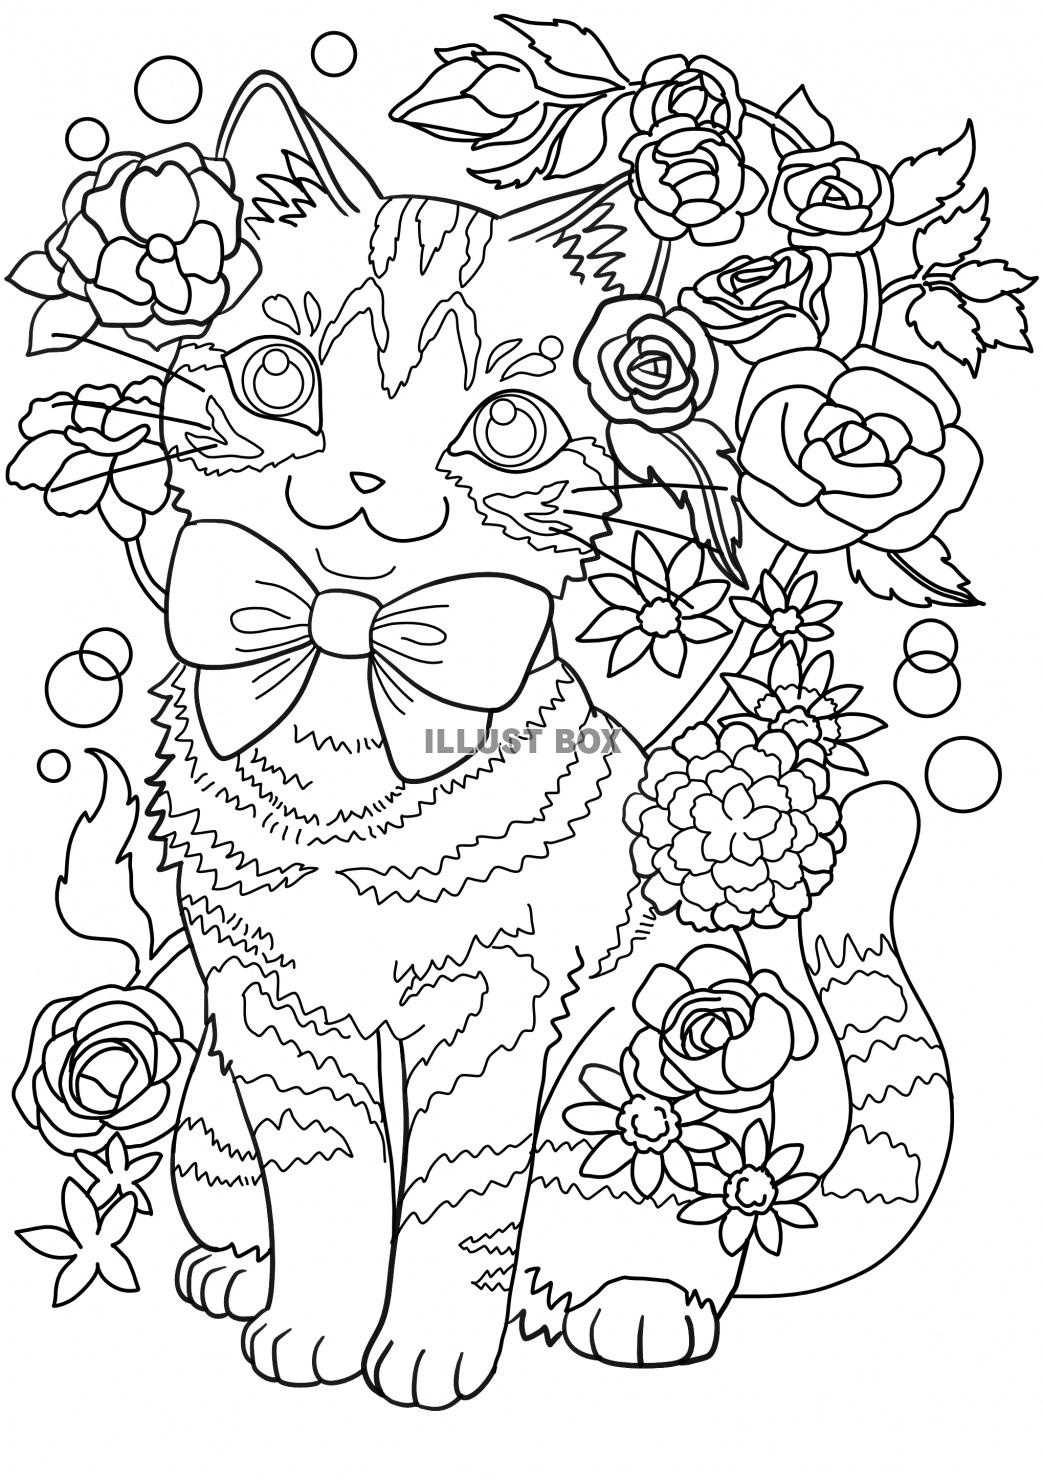 無料イラスト リボンと花をつけたお座りしている猫の塗り絵